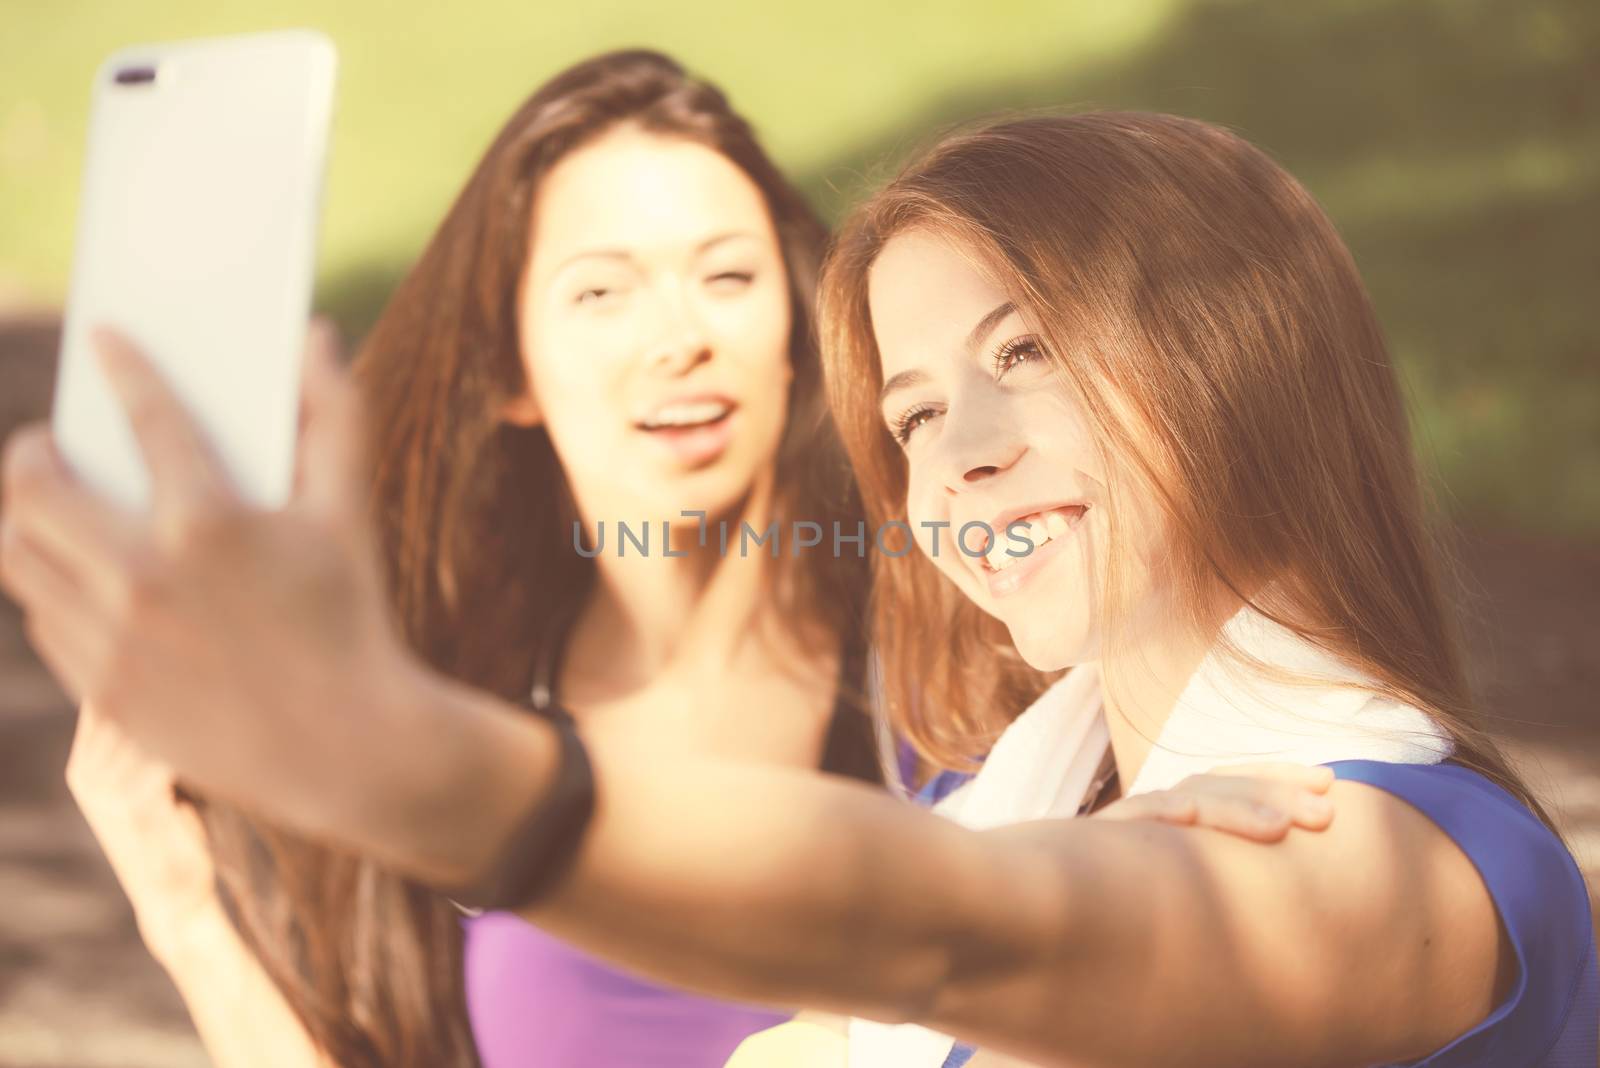 Girls taking selfie by wdnet_studio